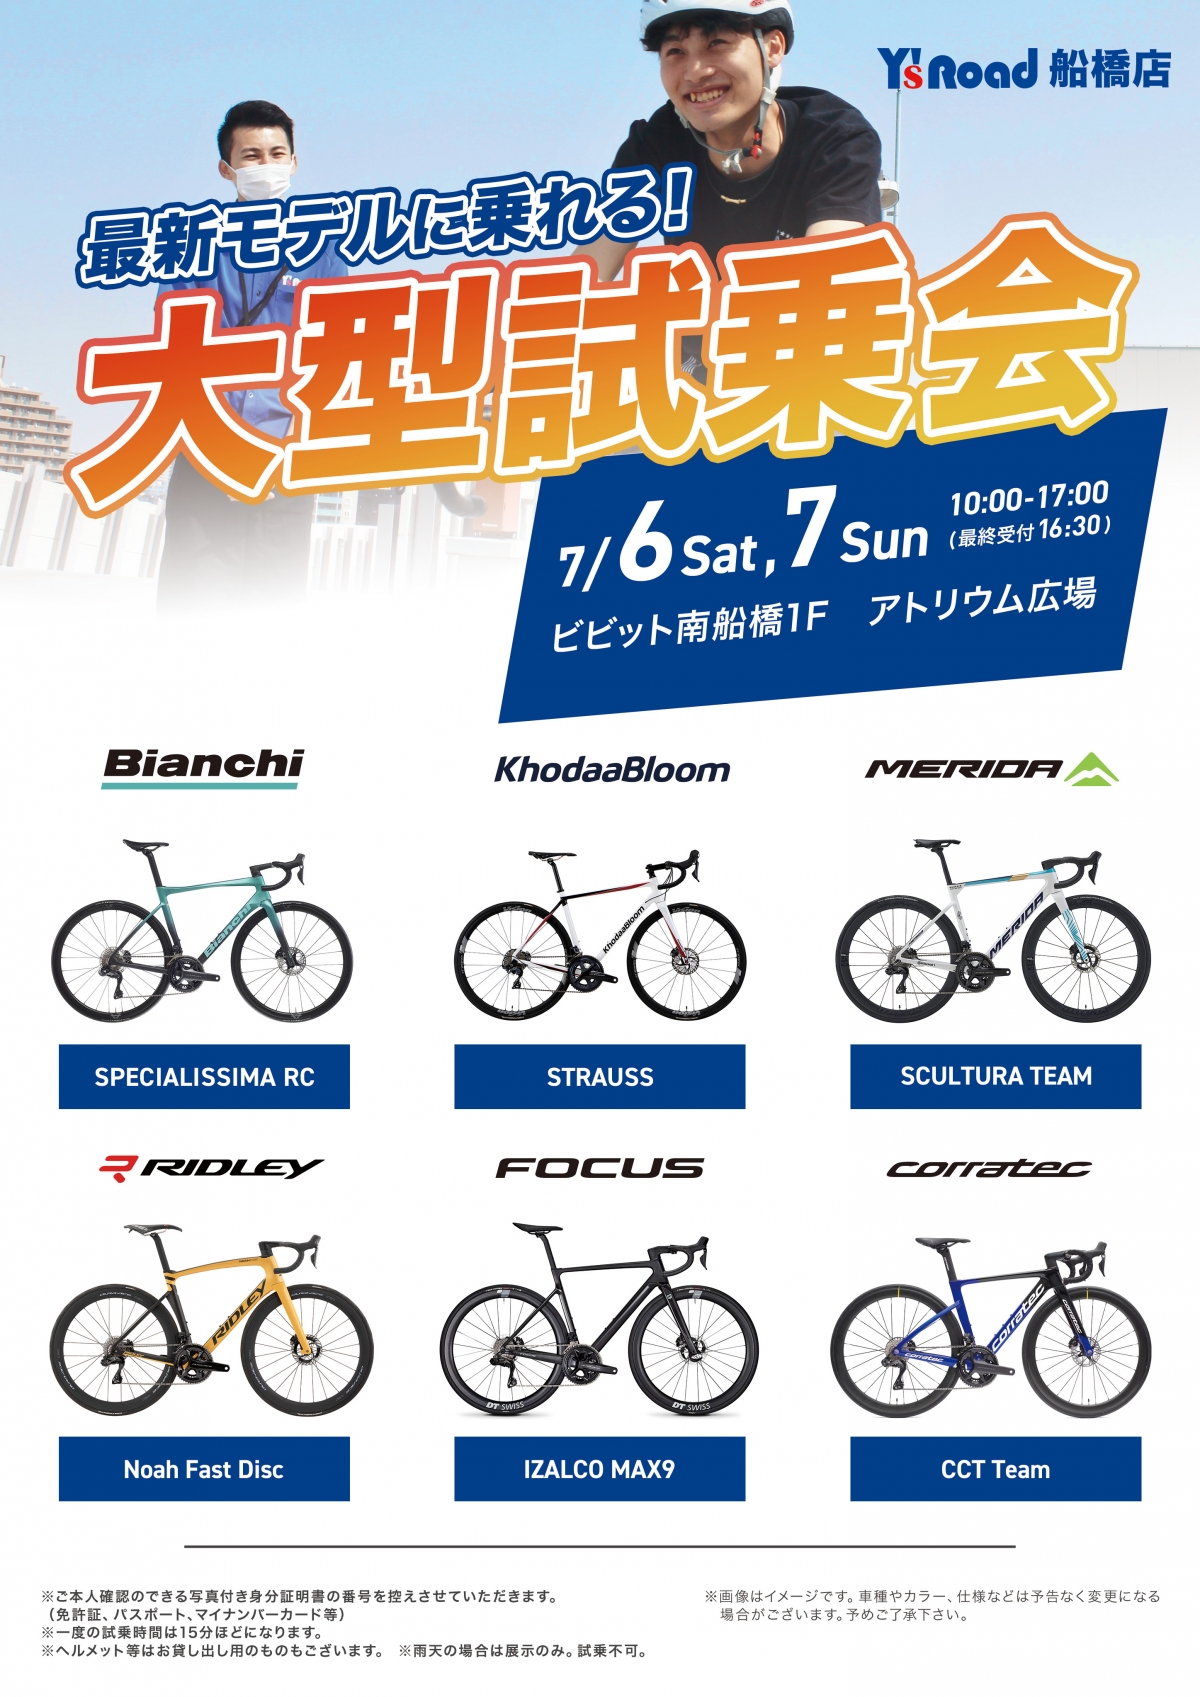 【船橋×試乗会】来週開催！自転車検討中の全ての方に来場してほしいイベントです！ | 船橋で自転車をお探しならY